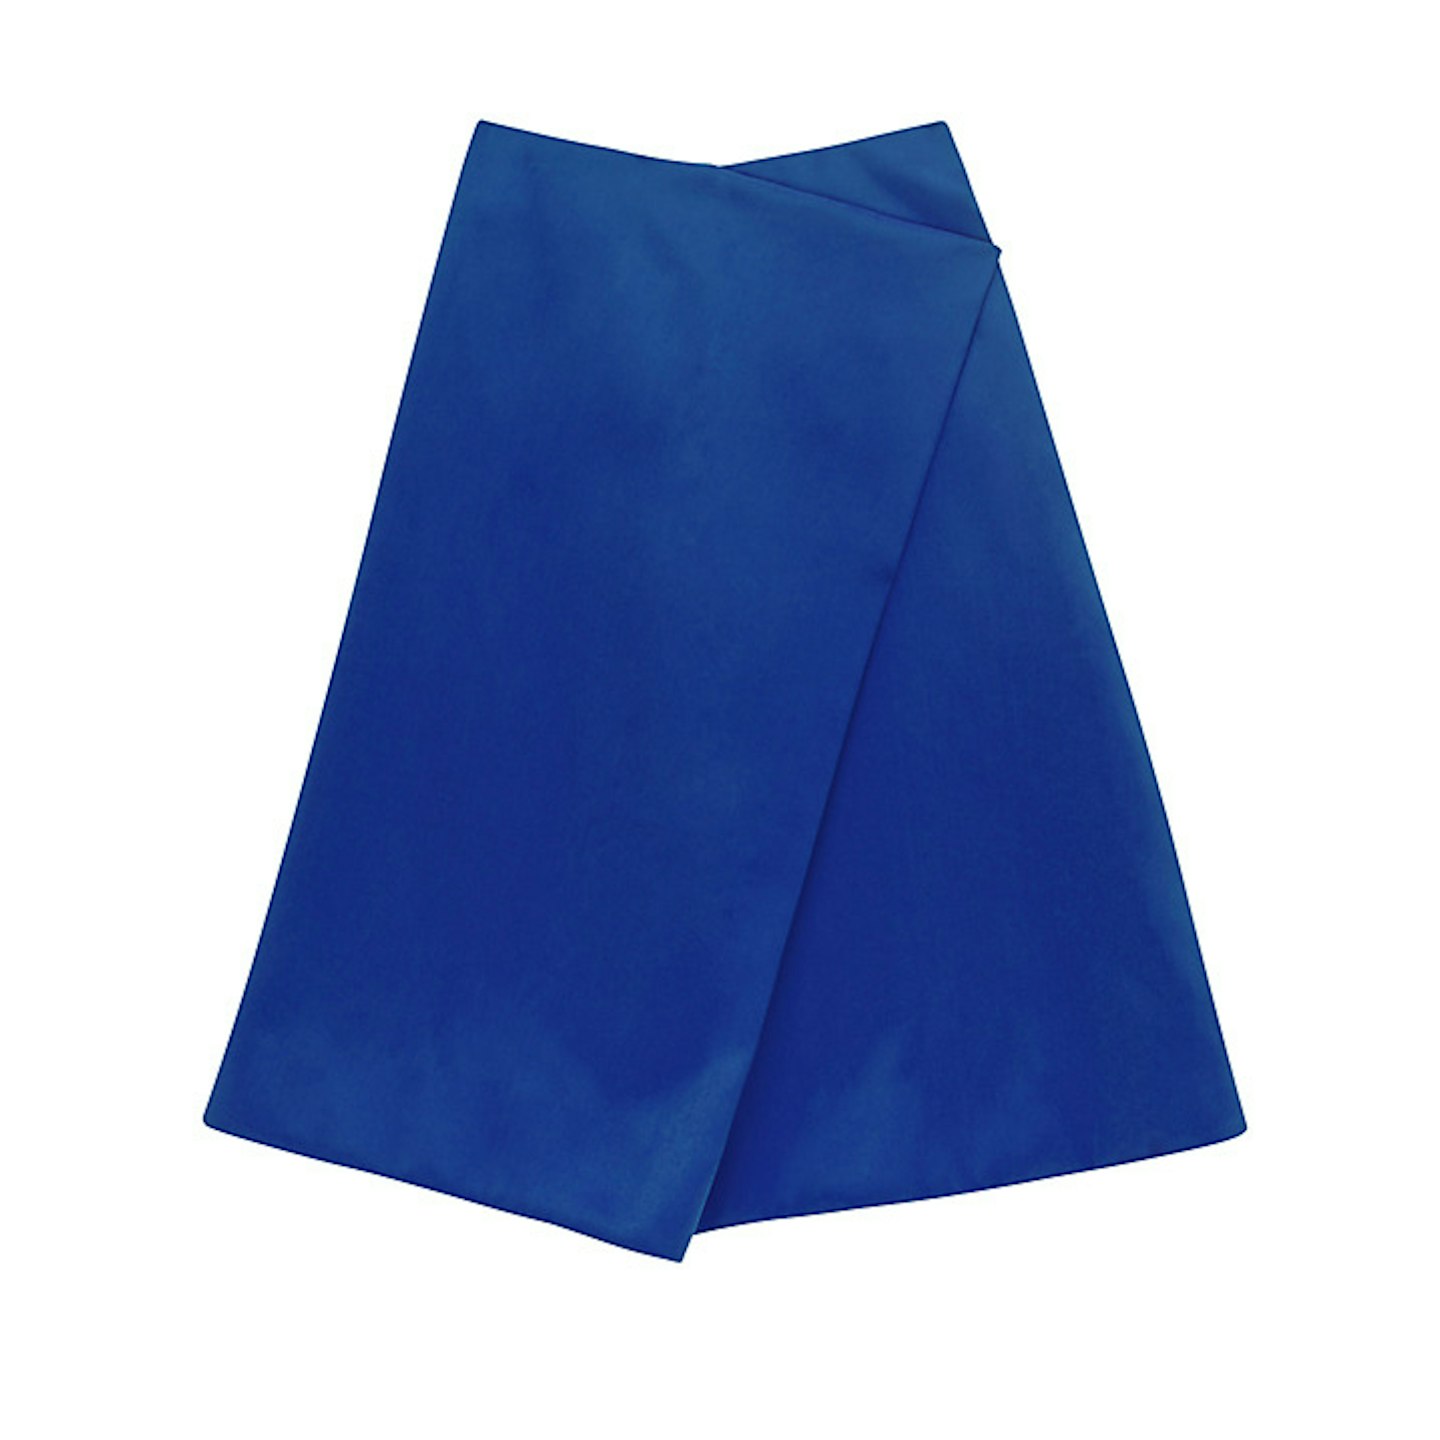 Blue A-Line skirt